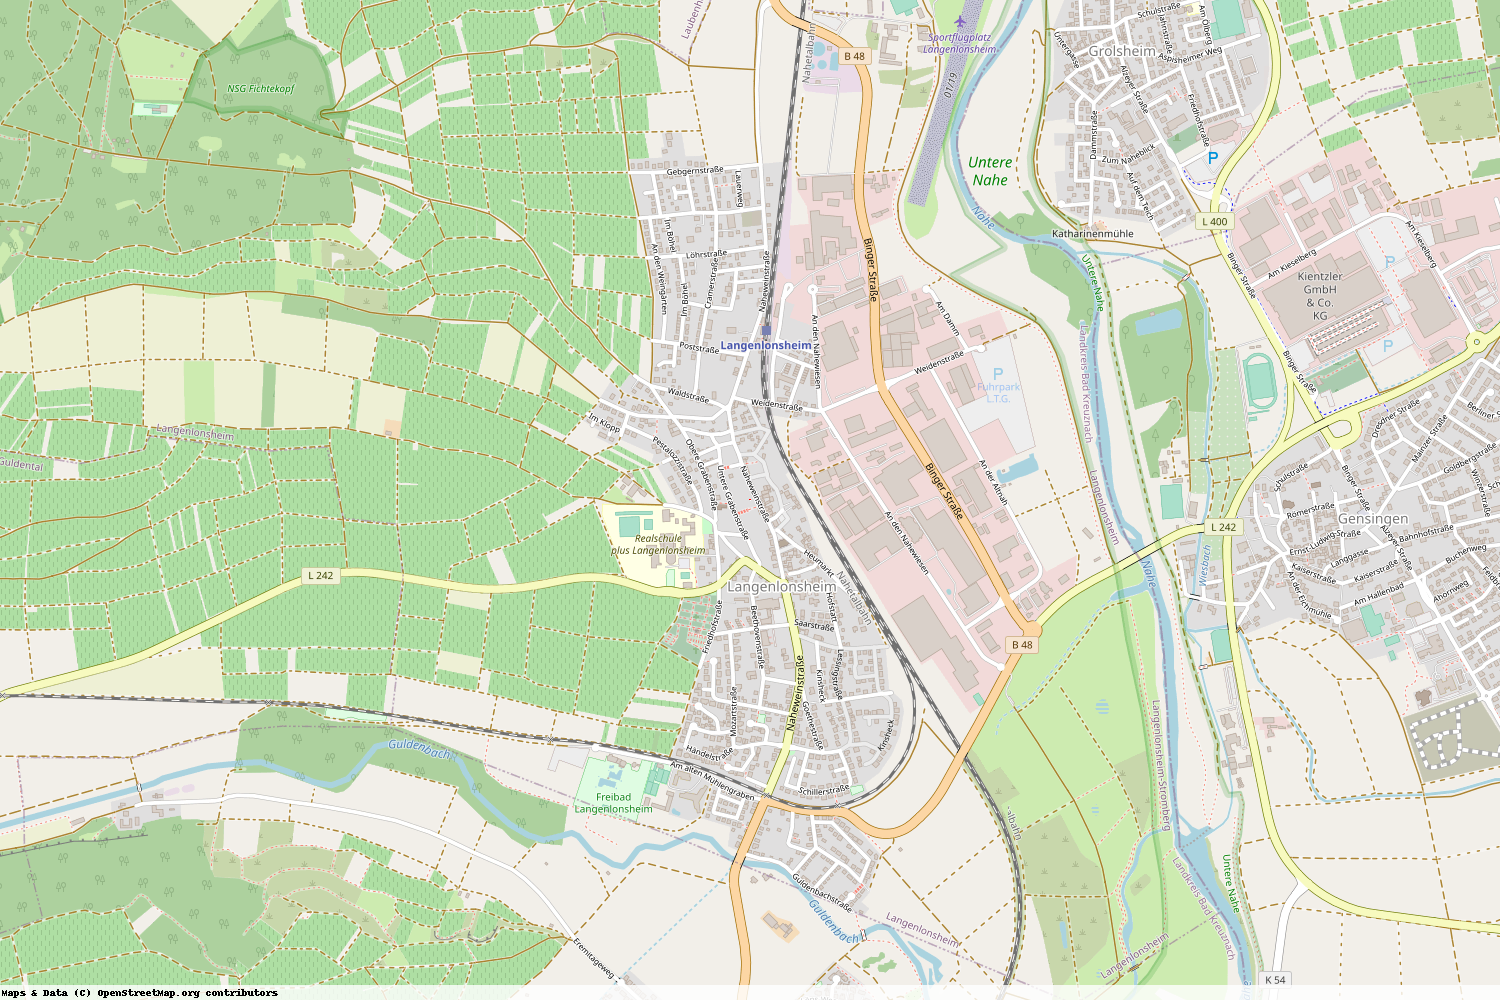 Ist gerade Stromausfall in Rheinland-Pfalz - Bad Kreuznach - Langenlonsheim?